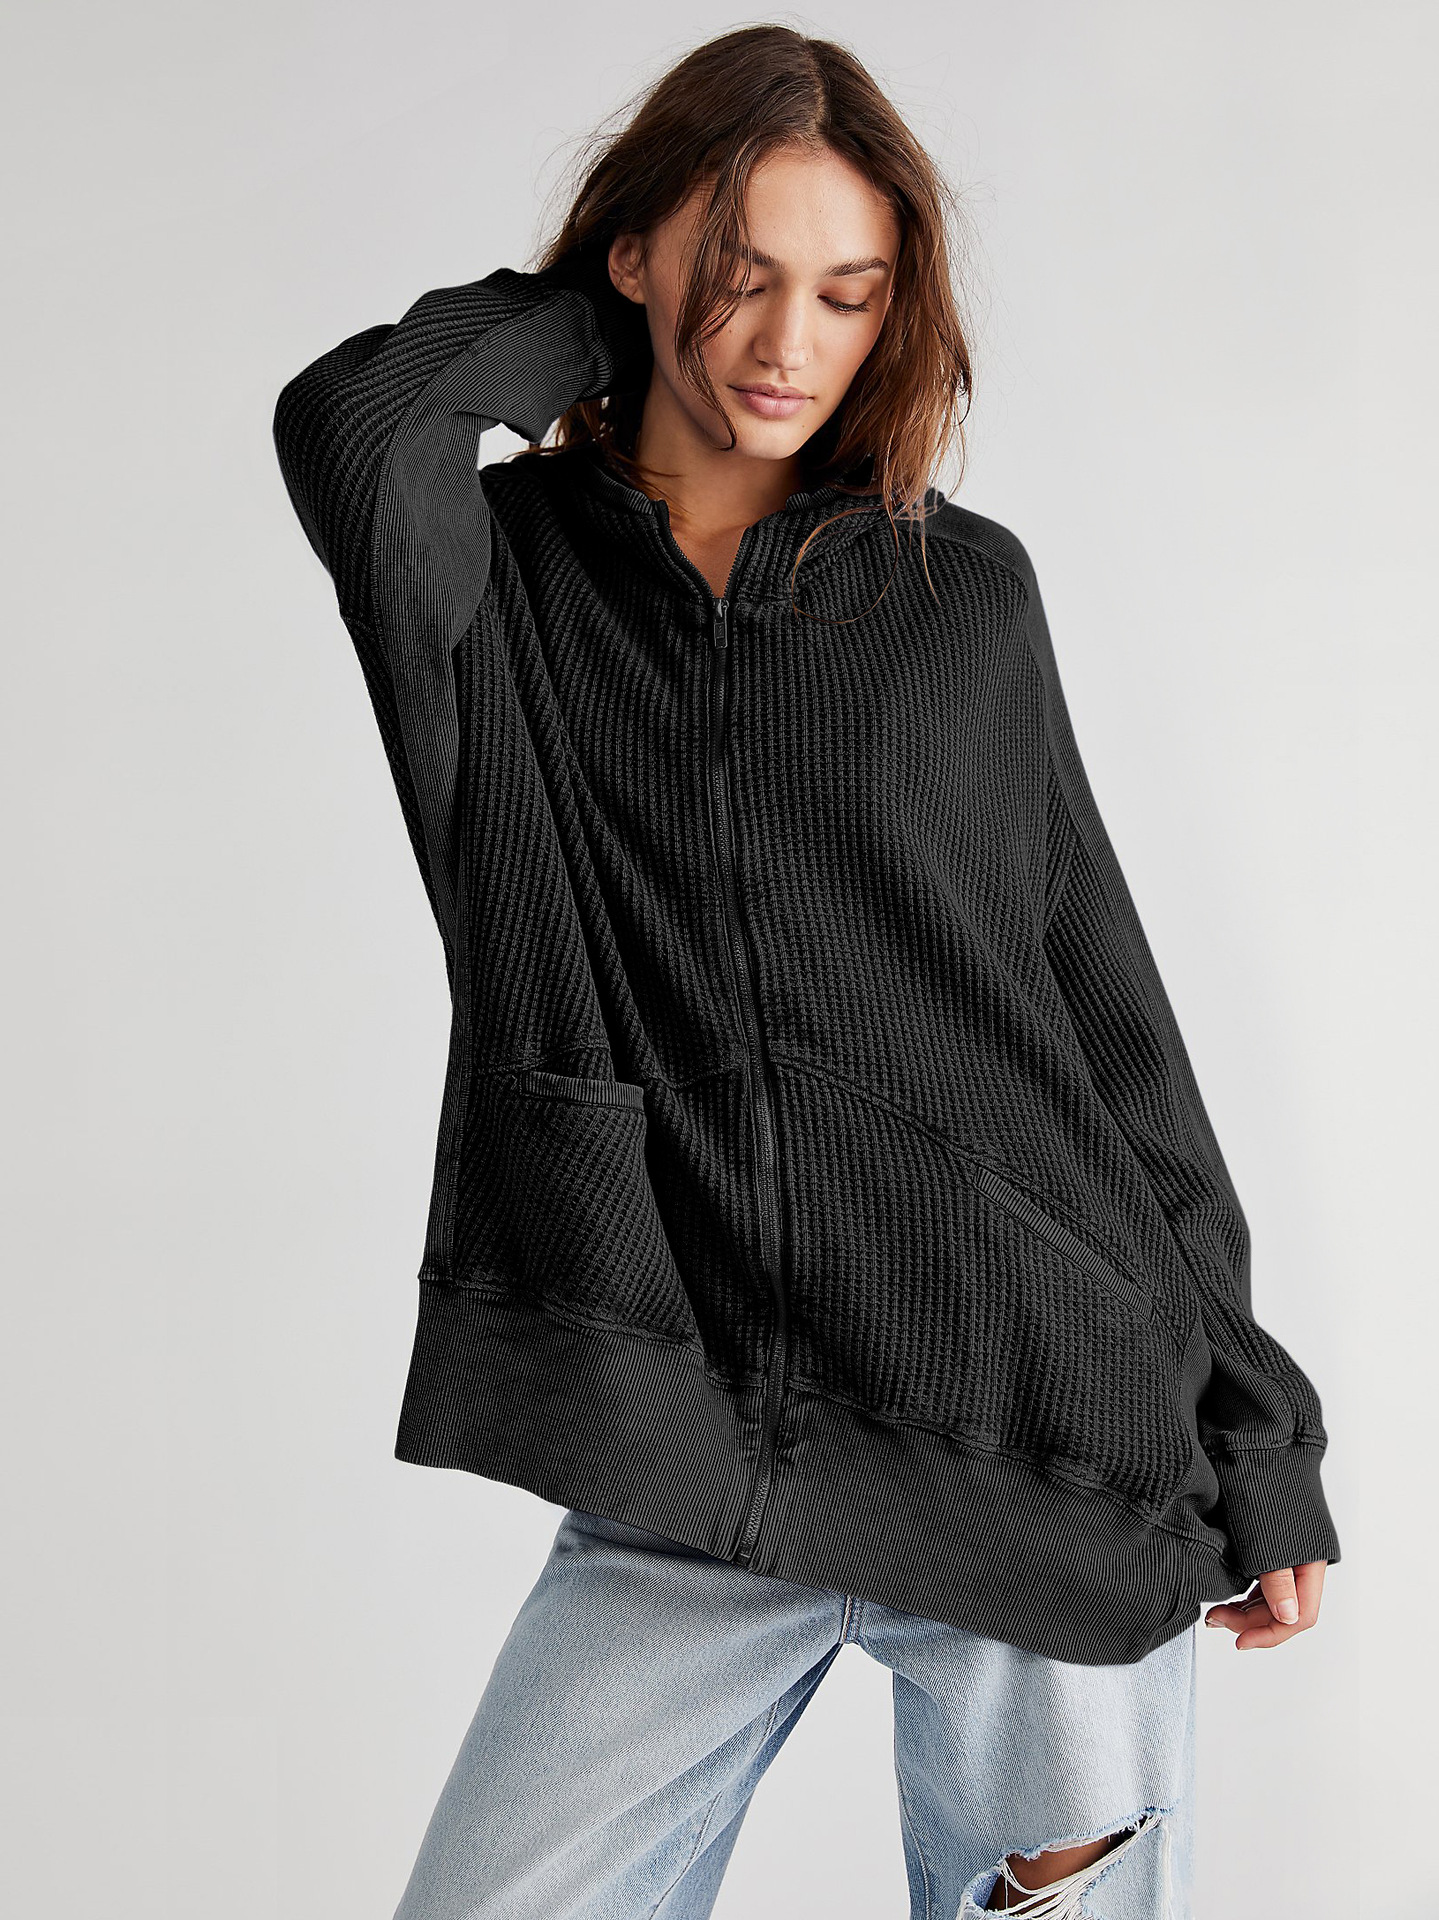 Waffley Cardigan Zipper Sweater Home Wear Outer Wear Women's Hoodie Mid-length Jacket